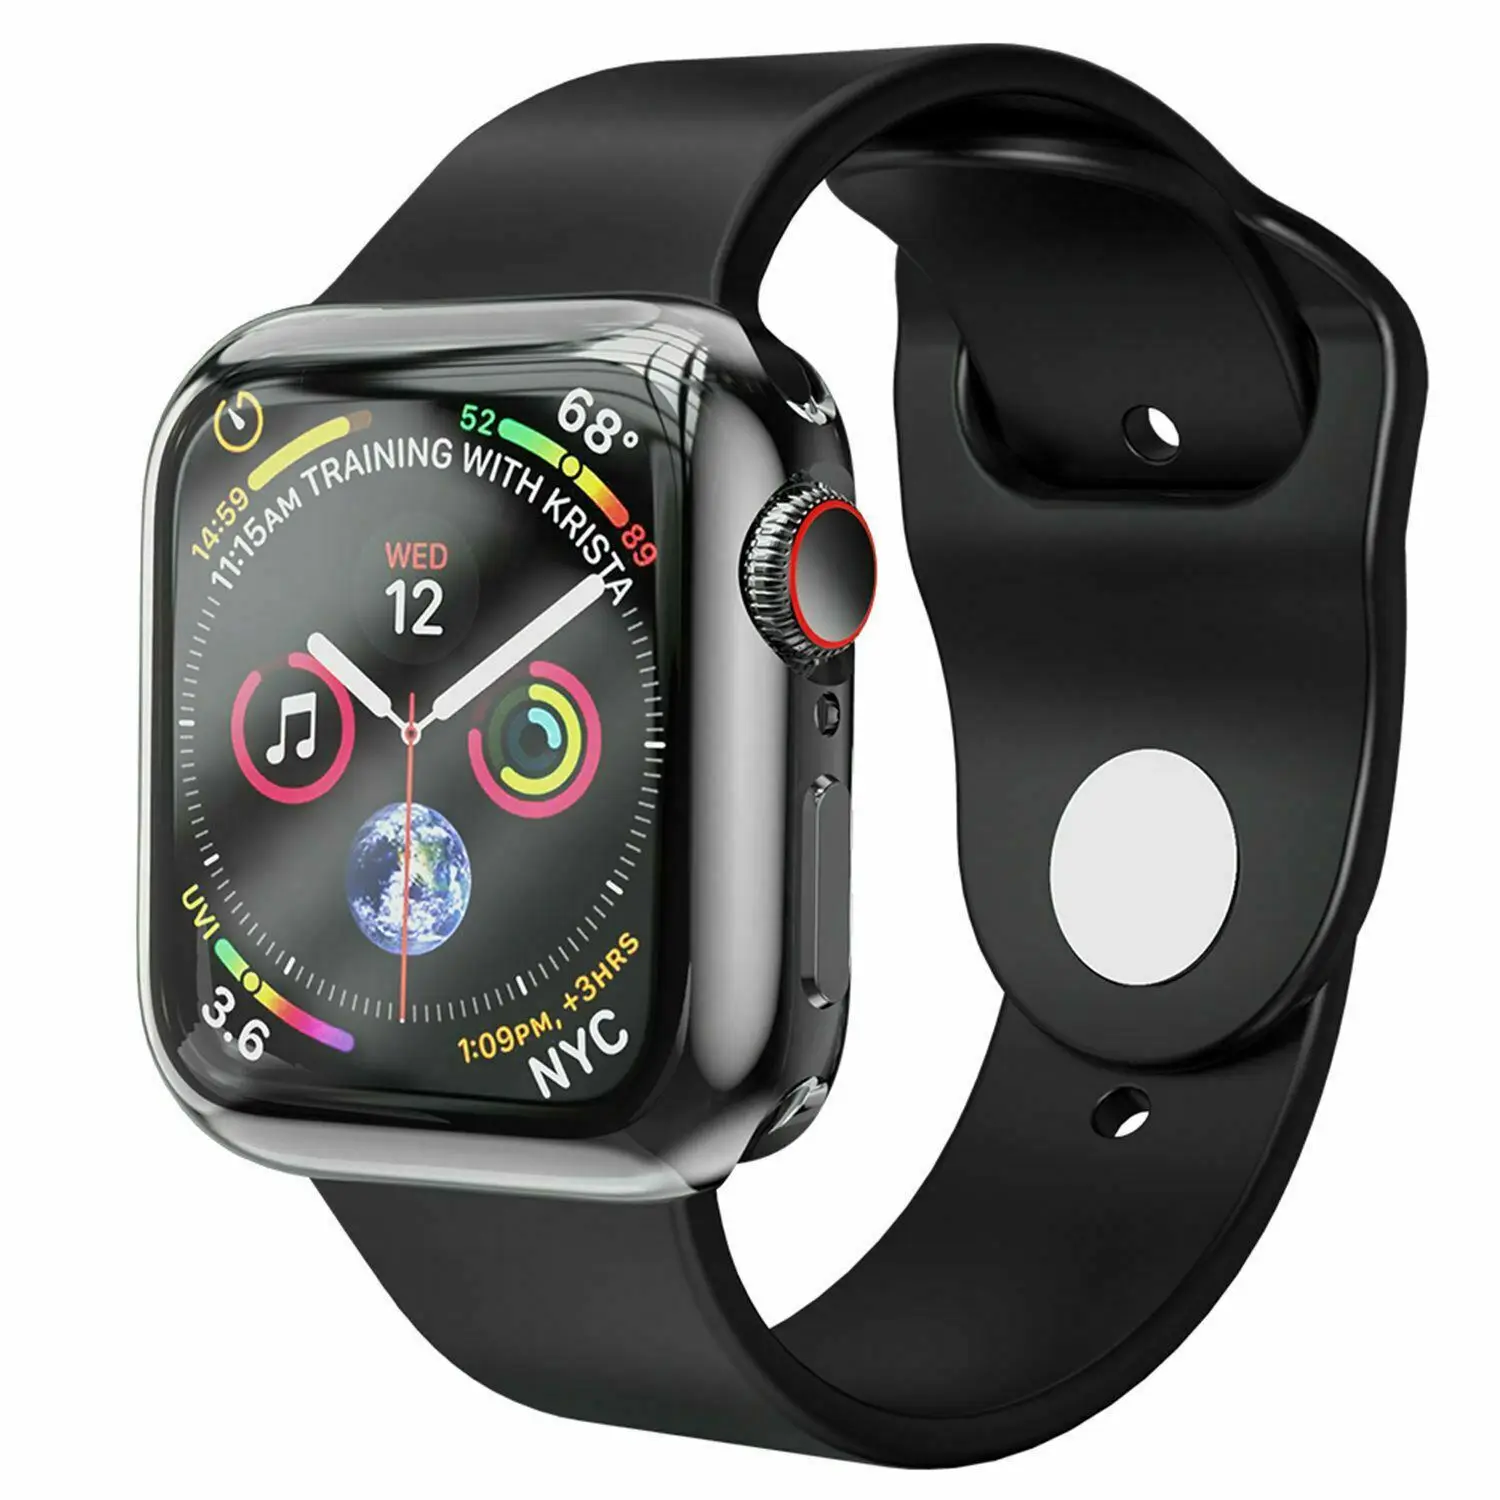 HOCO de la Galjanoplastia de TPU Reloj de la Cubierta Para Apple Watch 5/4 44 mm 40 mm Plena Protección de Silicona Caso Protector de Pantalla para iWatch Serie 4, 5 5